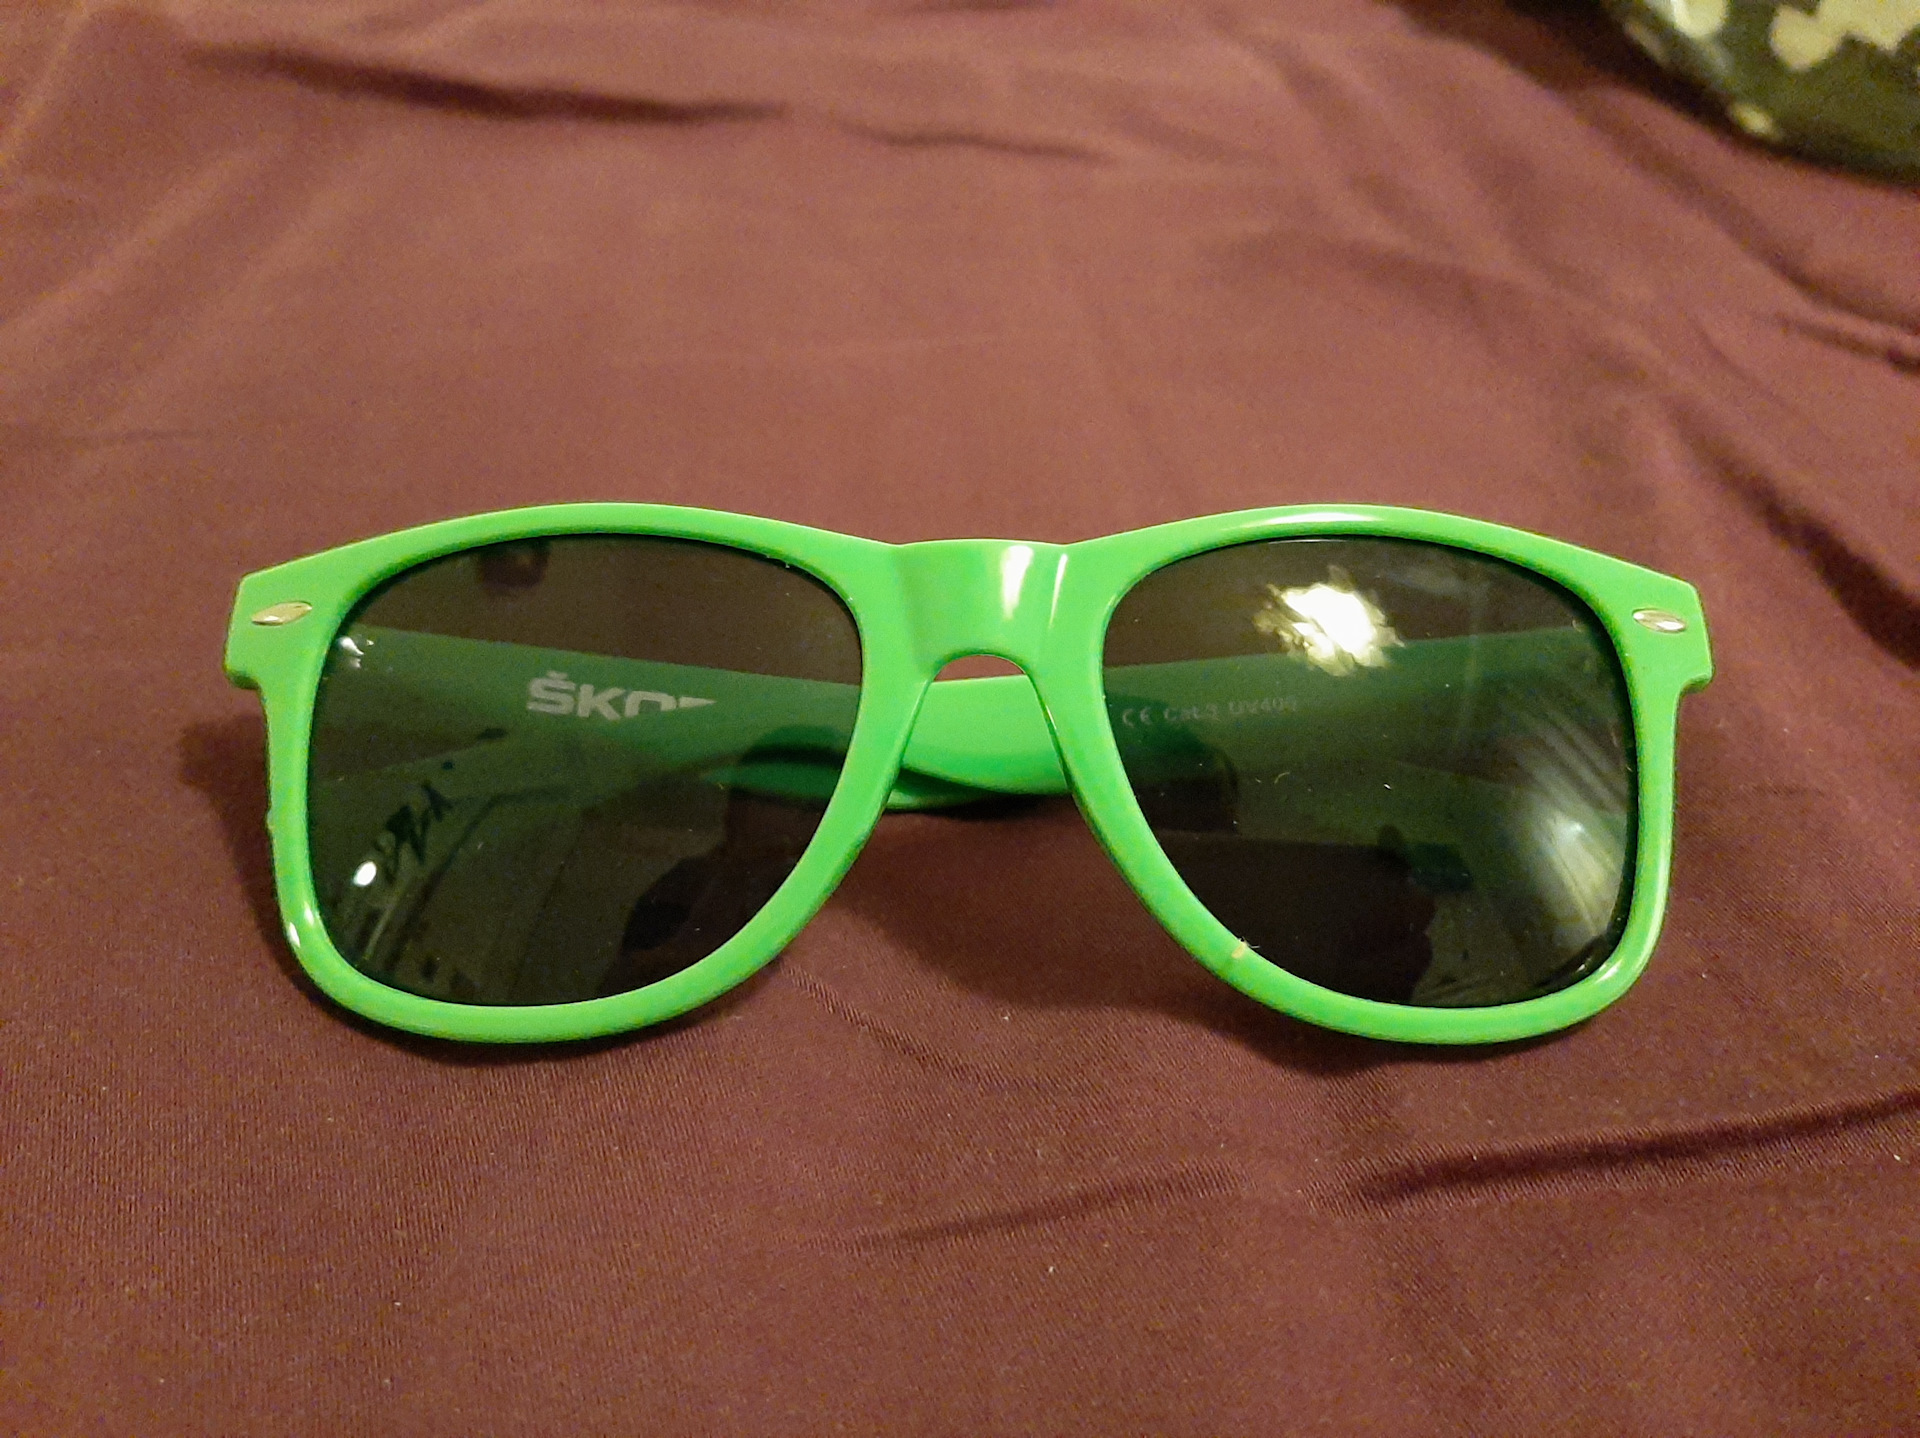 Игра зеленые очки. VAG 000087902bfbd очки. VAG 000087900abfbd очки Skoda зелено-черные. 000087900abfbd очки VAG Skoda. 000087900abfbd.